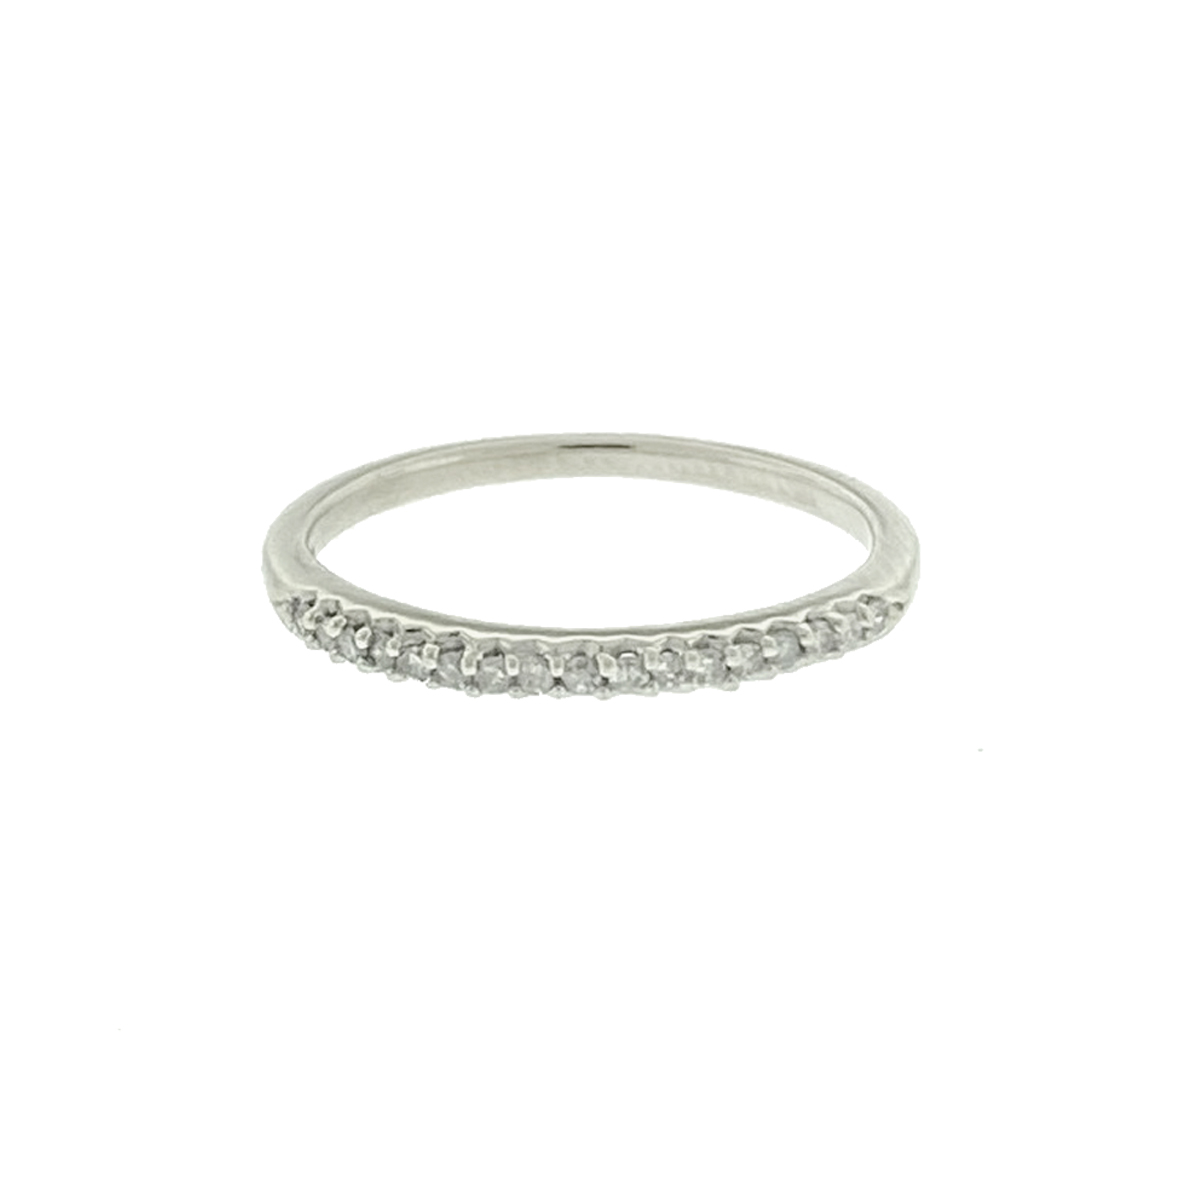 14k White Gold Women's Diamond Engagement Ring